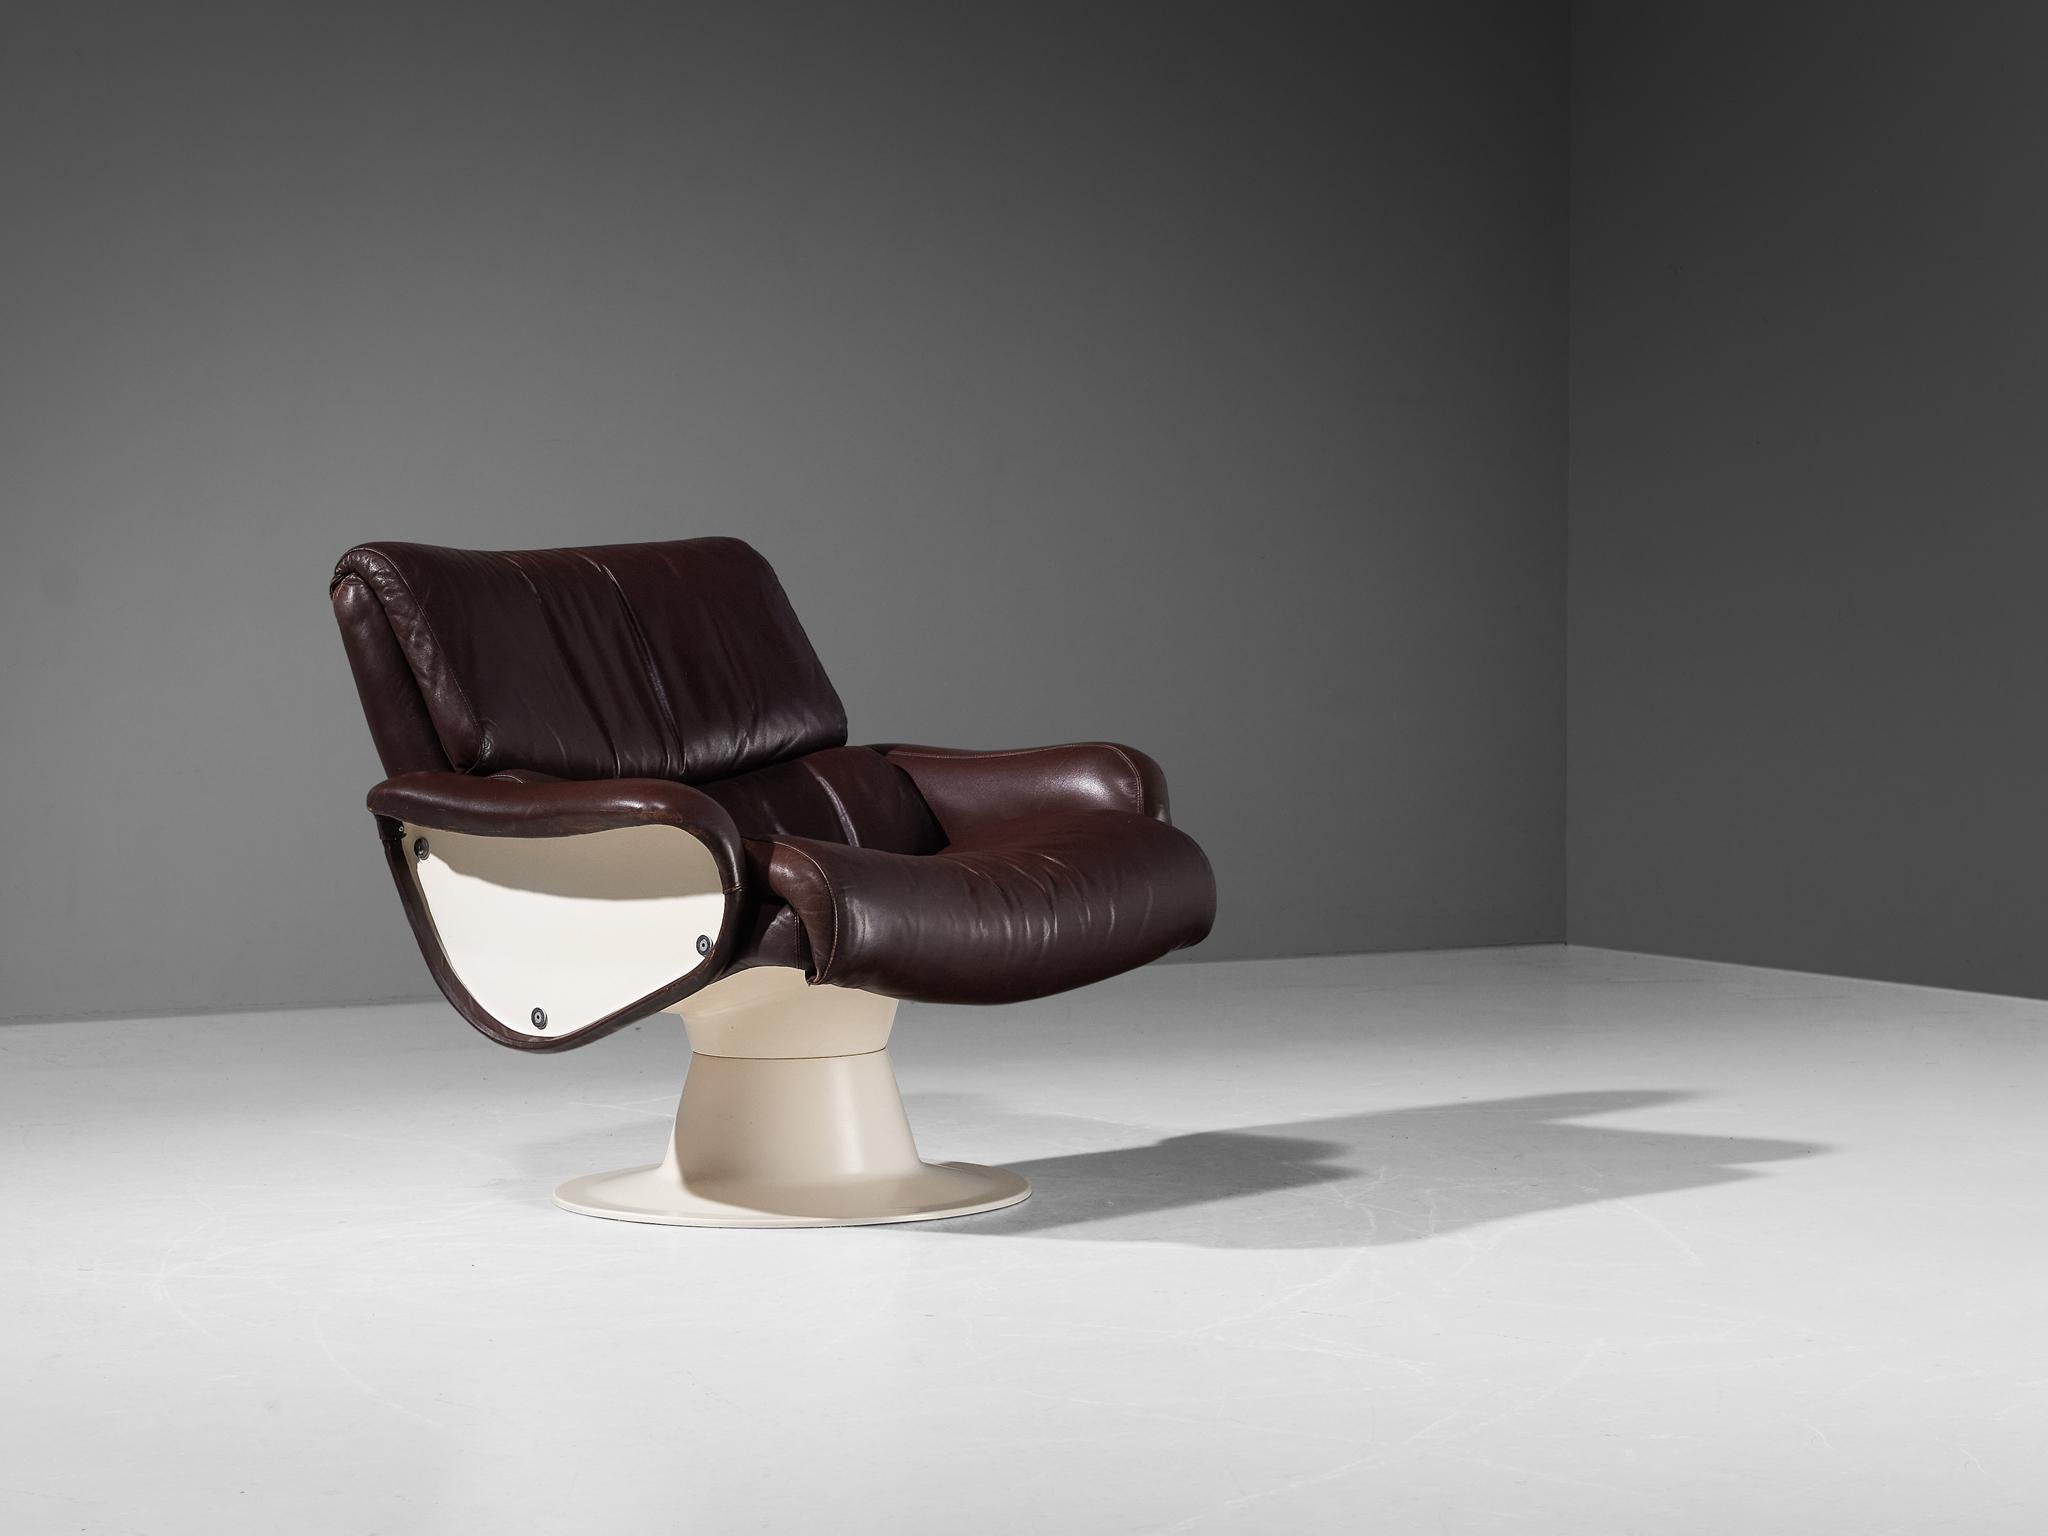 Yrjö Kukkapuro pour Haimi, chaise longue 'Saturnus', cuir, fibre de verre, Finlande, années 1960.

Chaise longue de forme organique par le designer finlandais Yrjö Kukkapuro. Cette chaise se compose d'un cadre et d'un siège en fibre de verre moulée